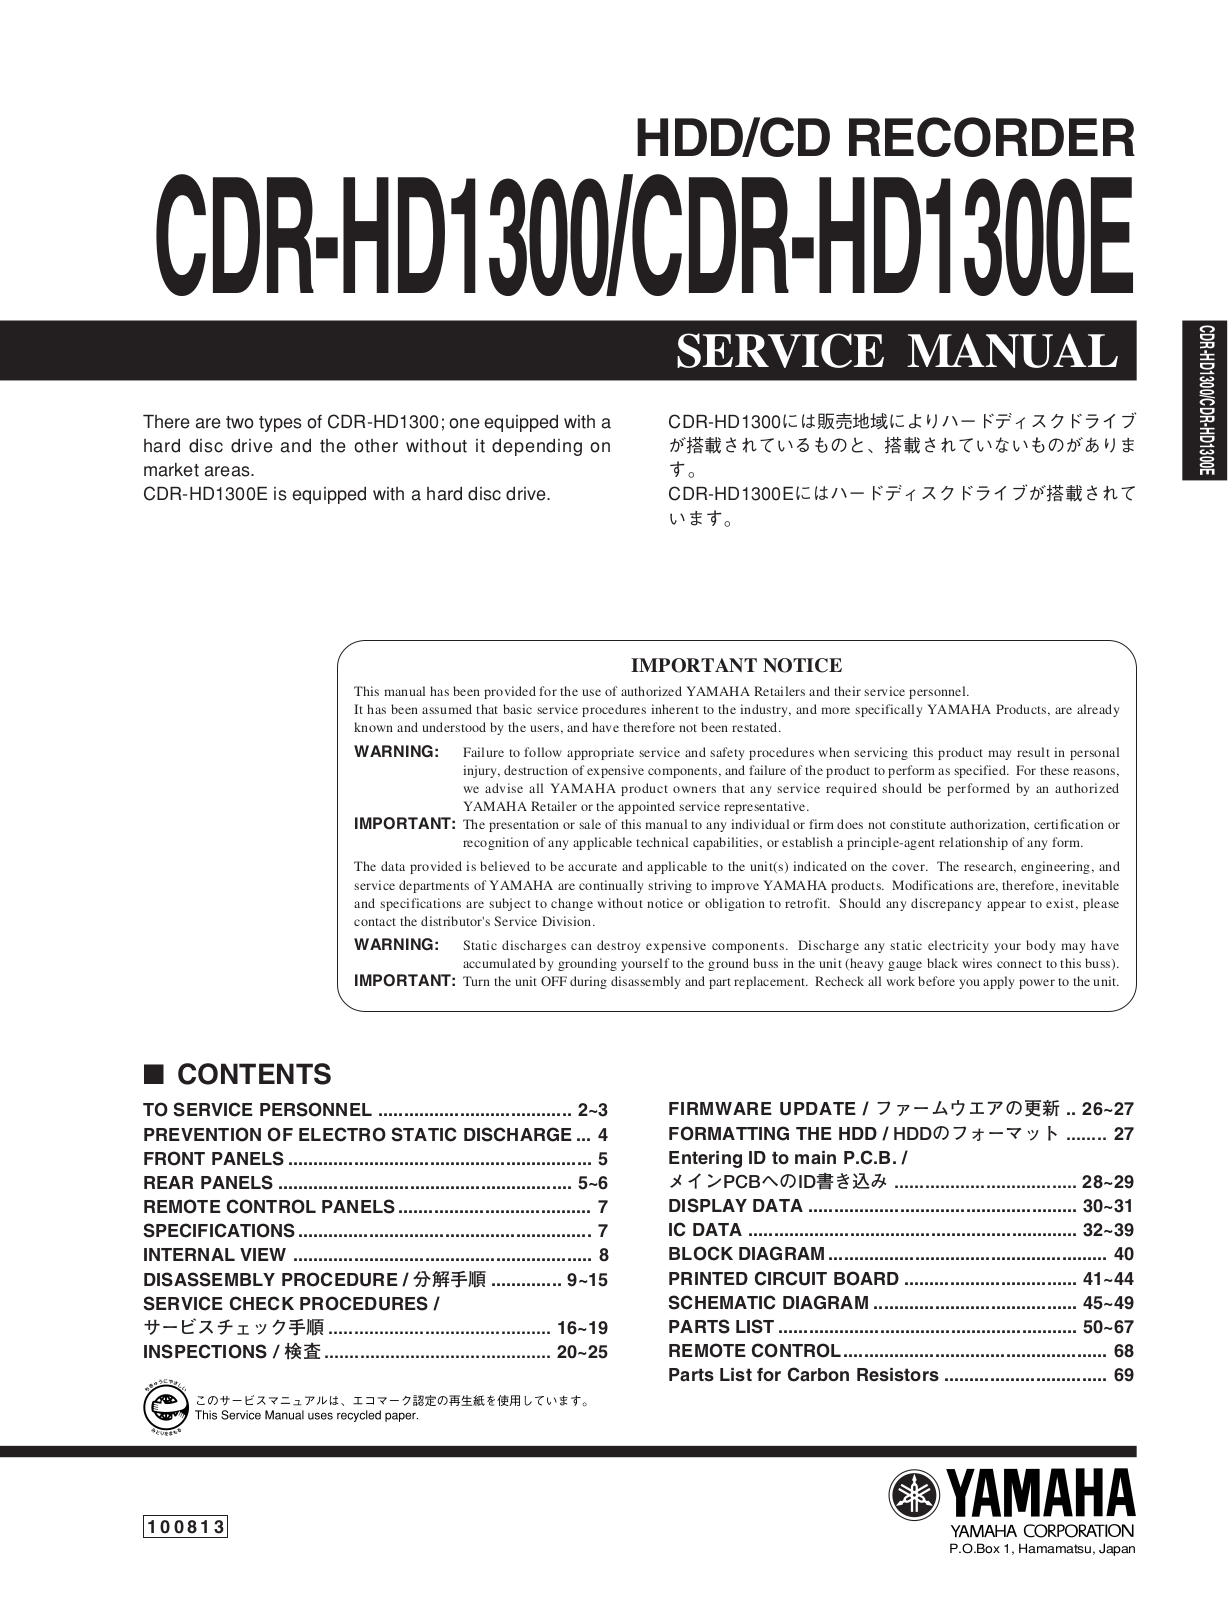 Yamaha CDRHD-1300-E Service manual